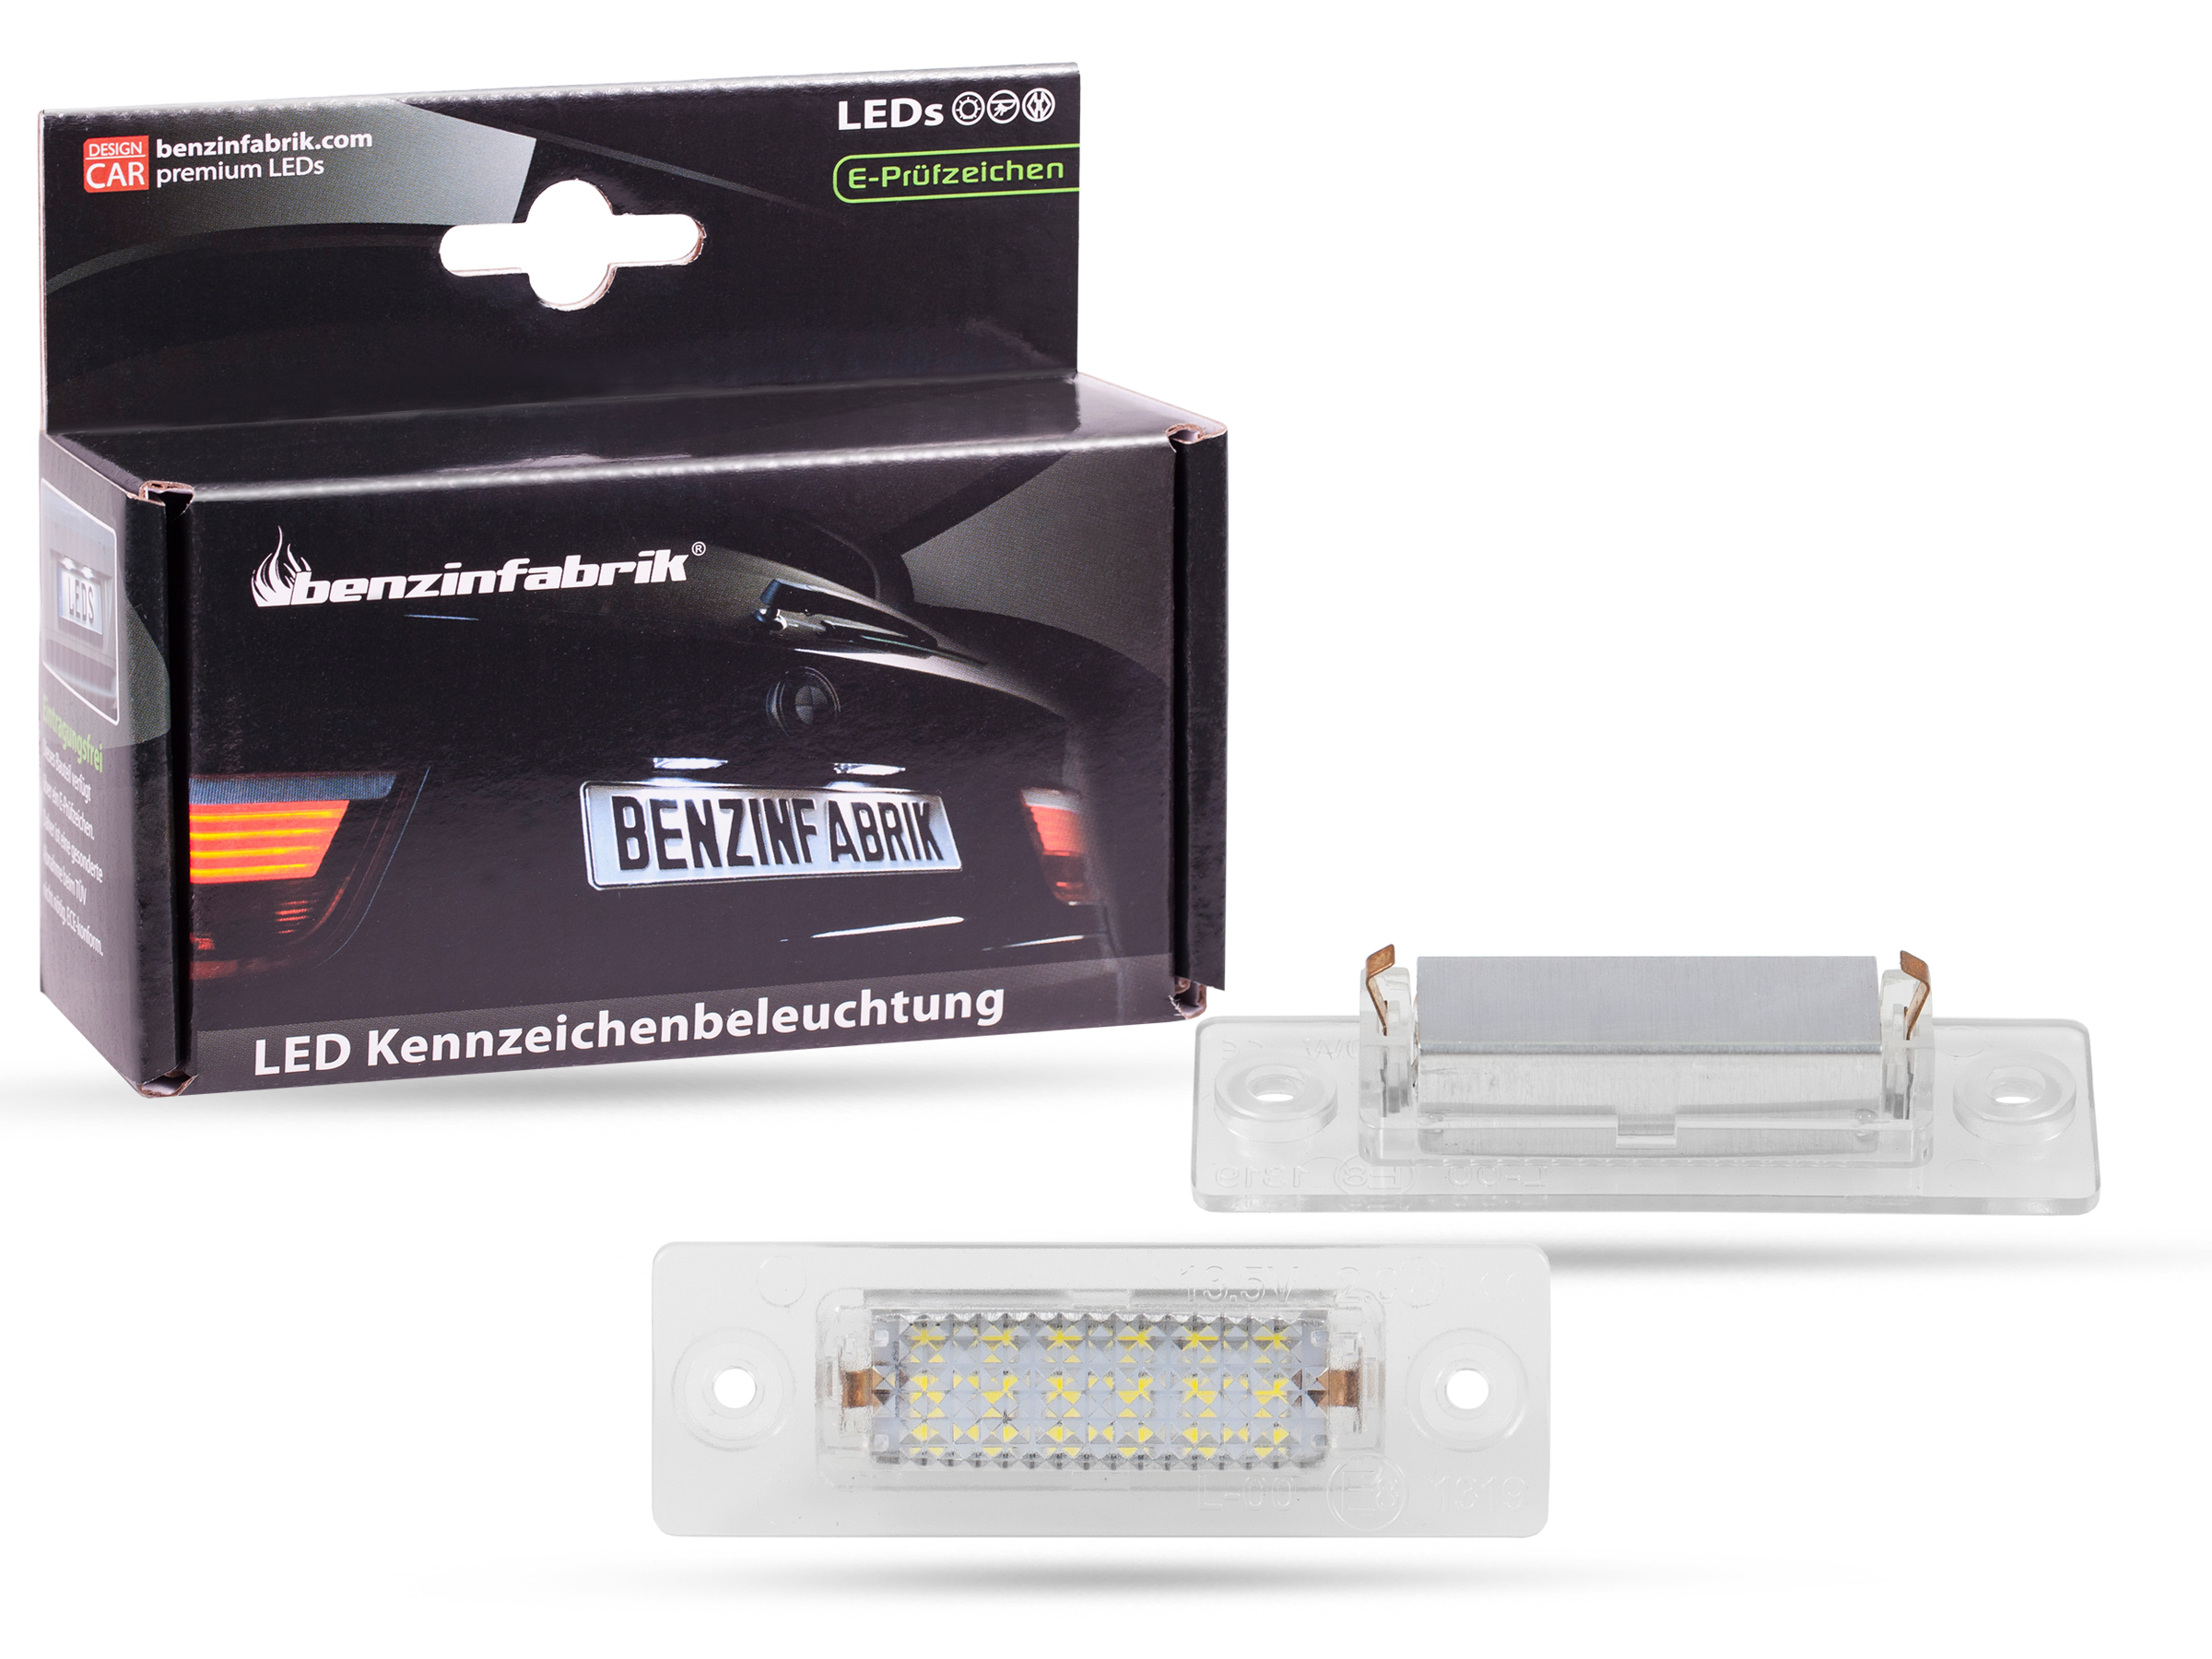 LED Kennzeichenbeleuchtung Module VW T5, mit E-Prüfzeichen, LED  Kennzeichenbeleuchtung für VW, LED Kennzeichenbeleuchtung